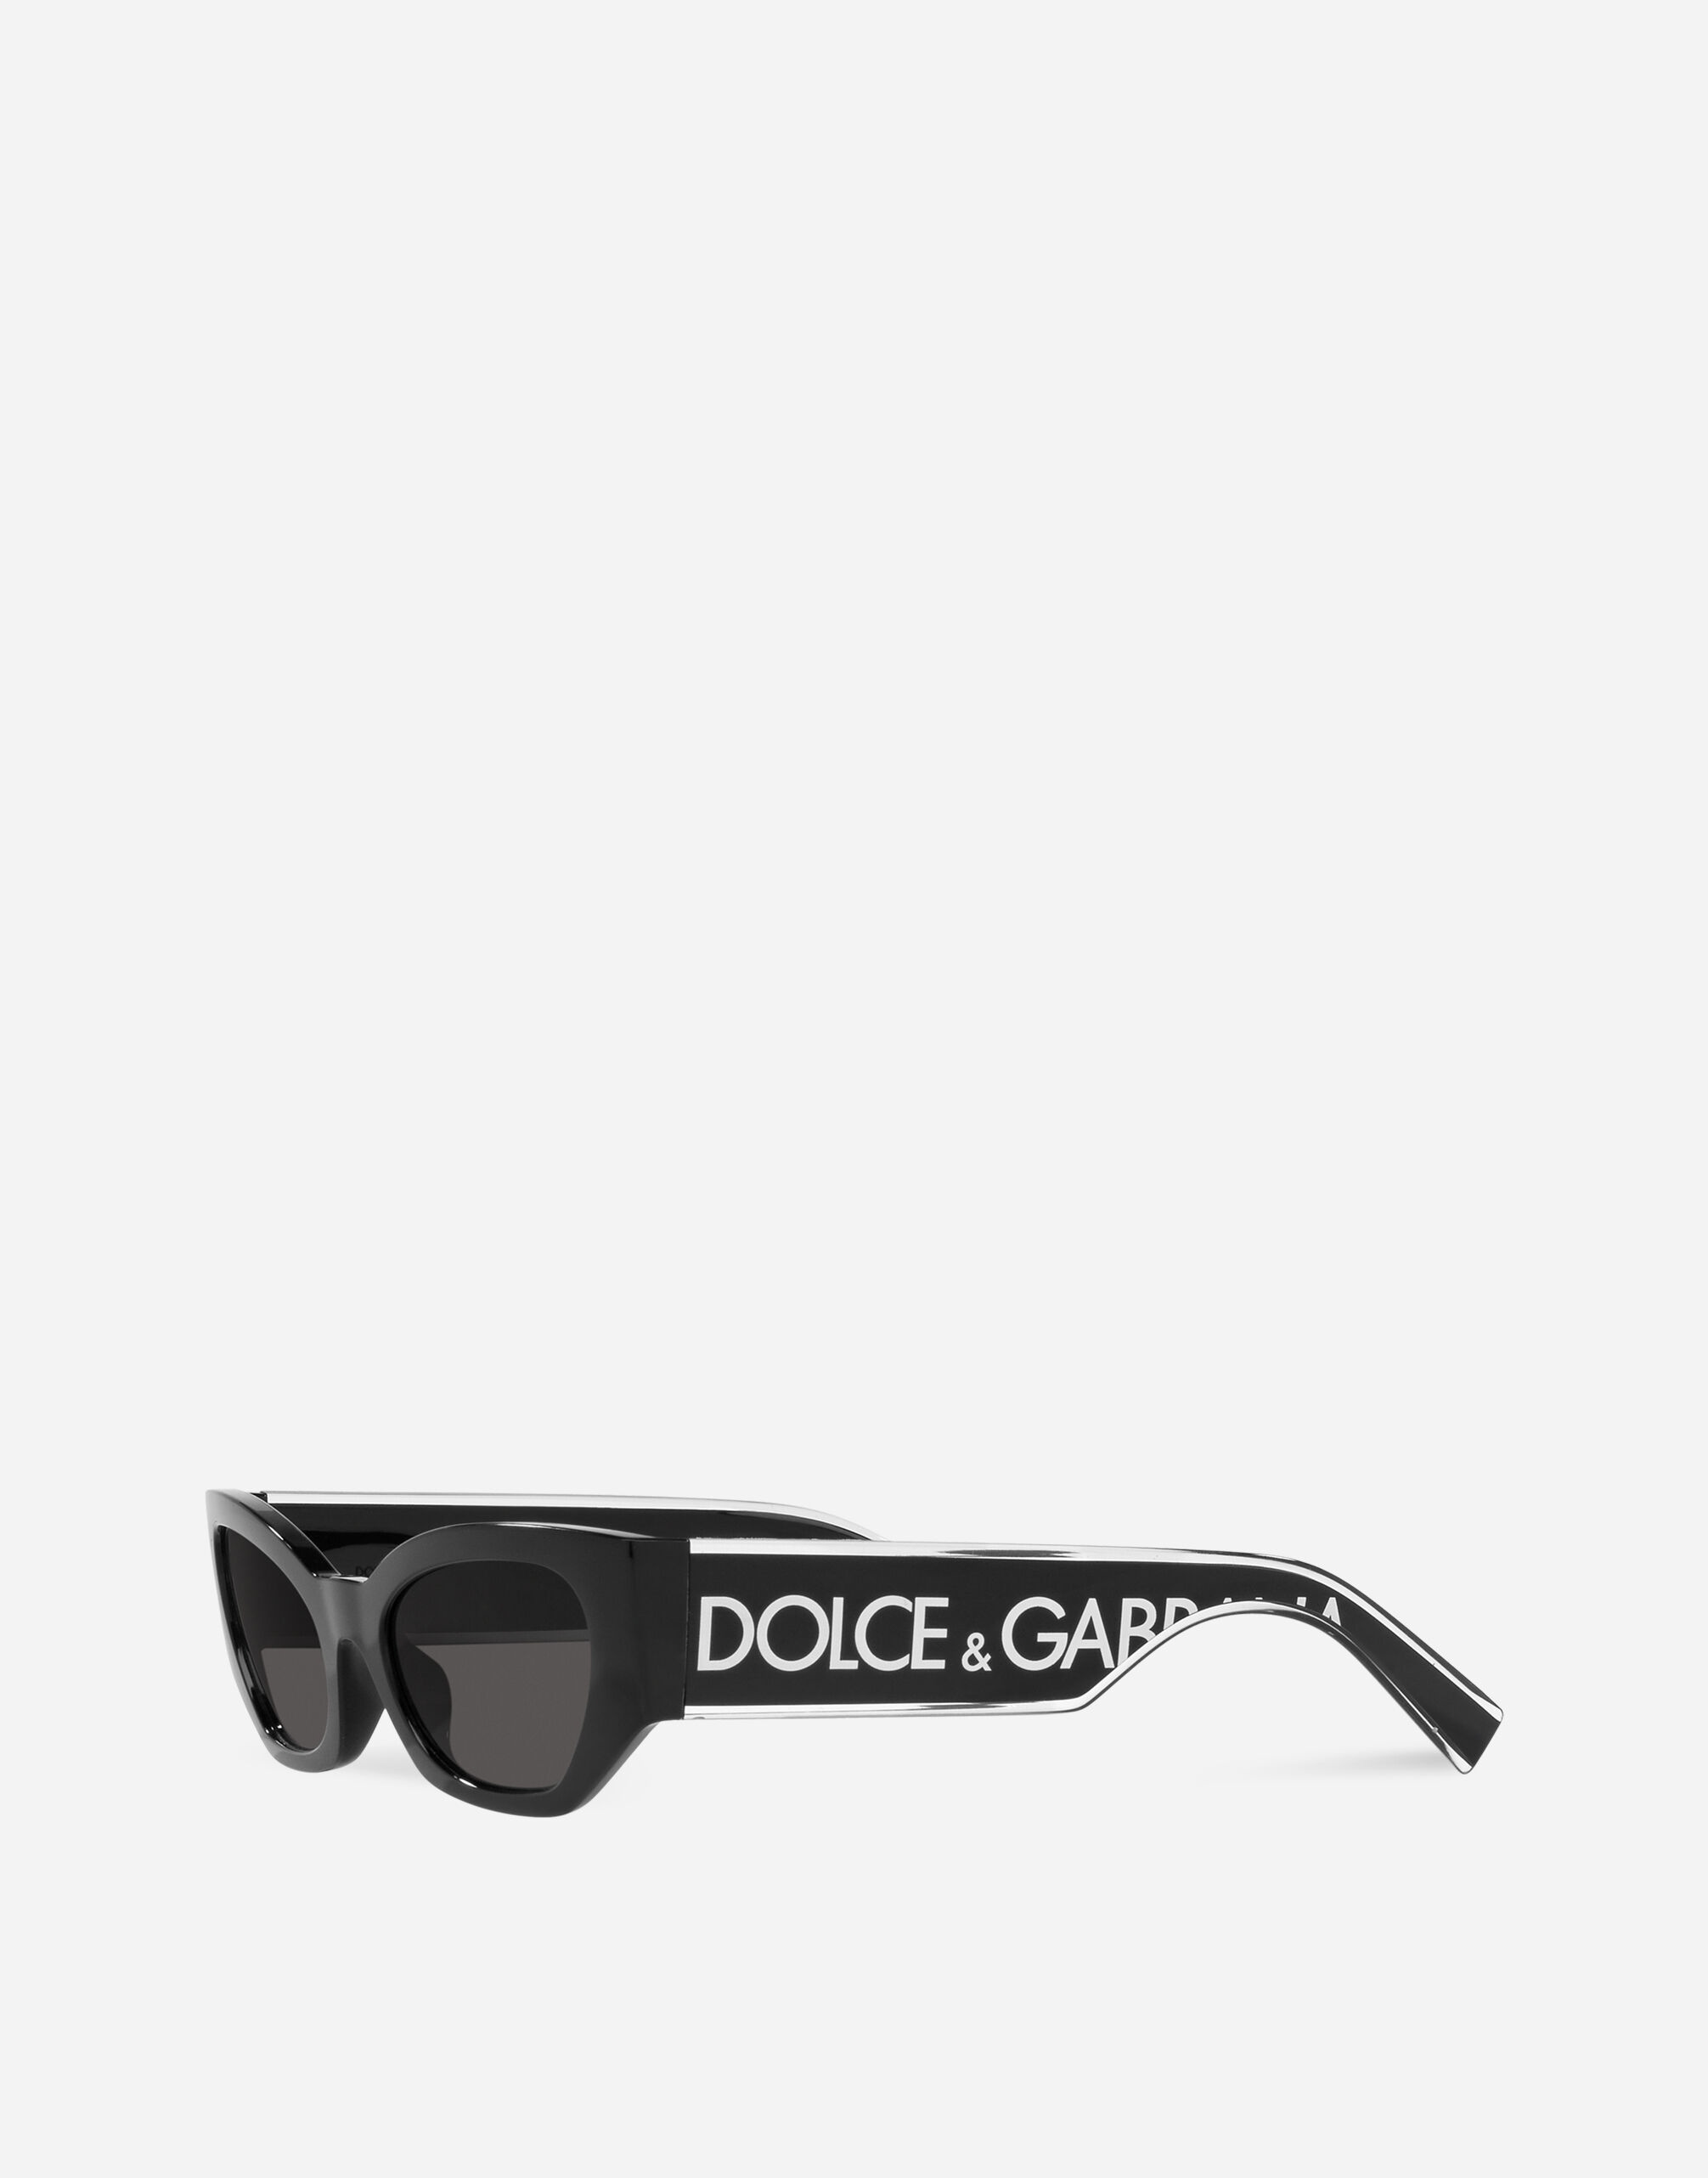 DG Elastic Sunglasses - 2